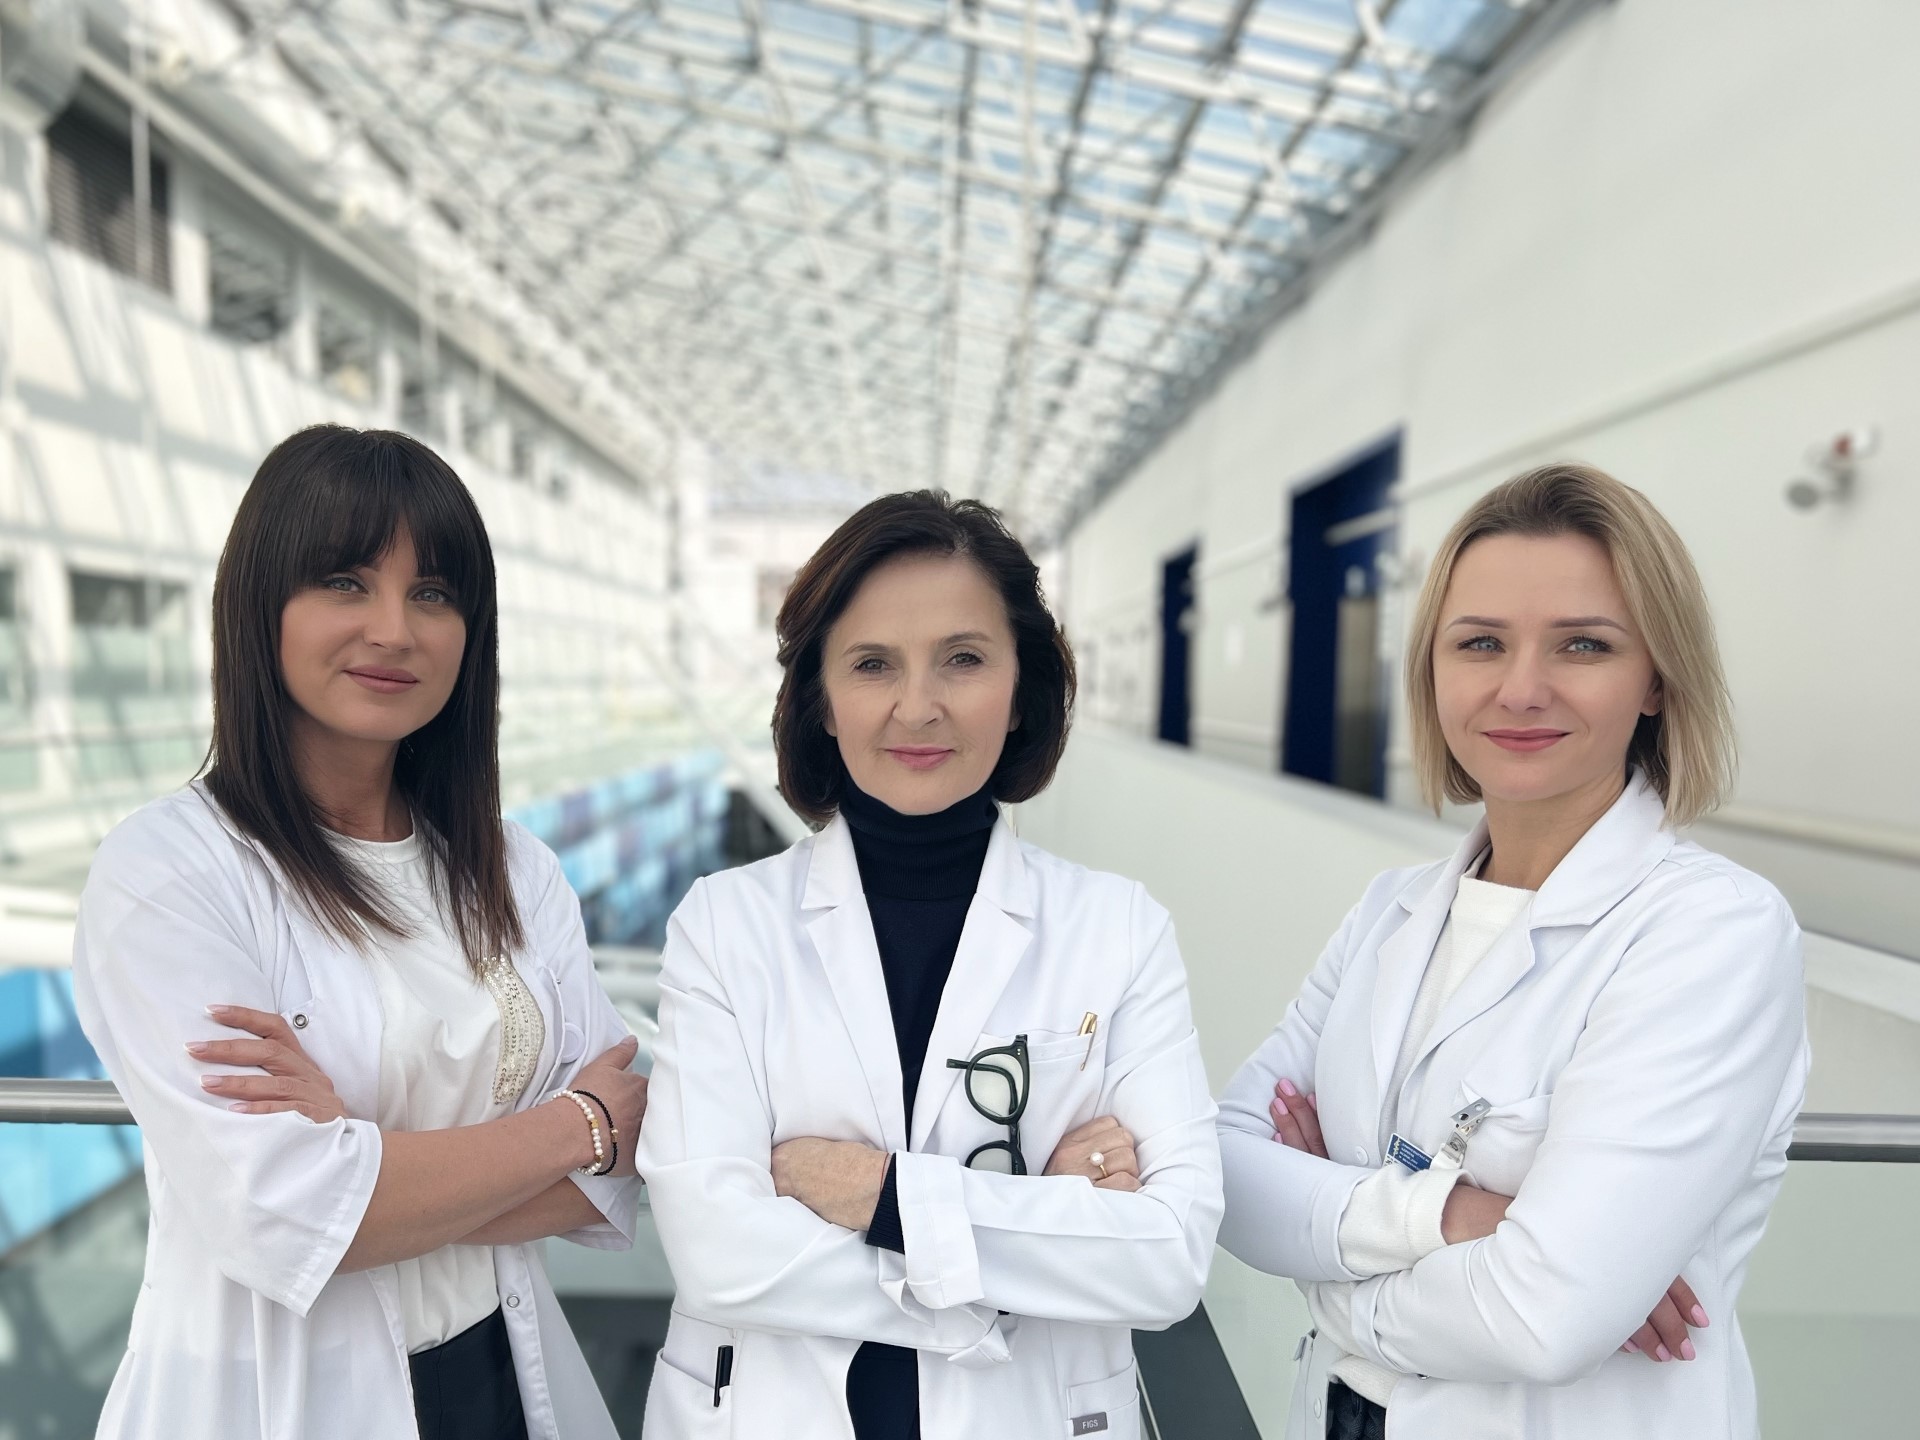 Profesor Violetta Dymicka-Piekarska, dr hab. Karolina Orywal i dr Joanna Pawlus w holu szpitala klinicznego w Białymstoku